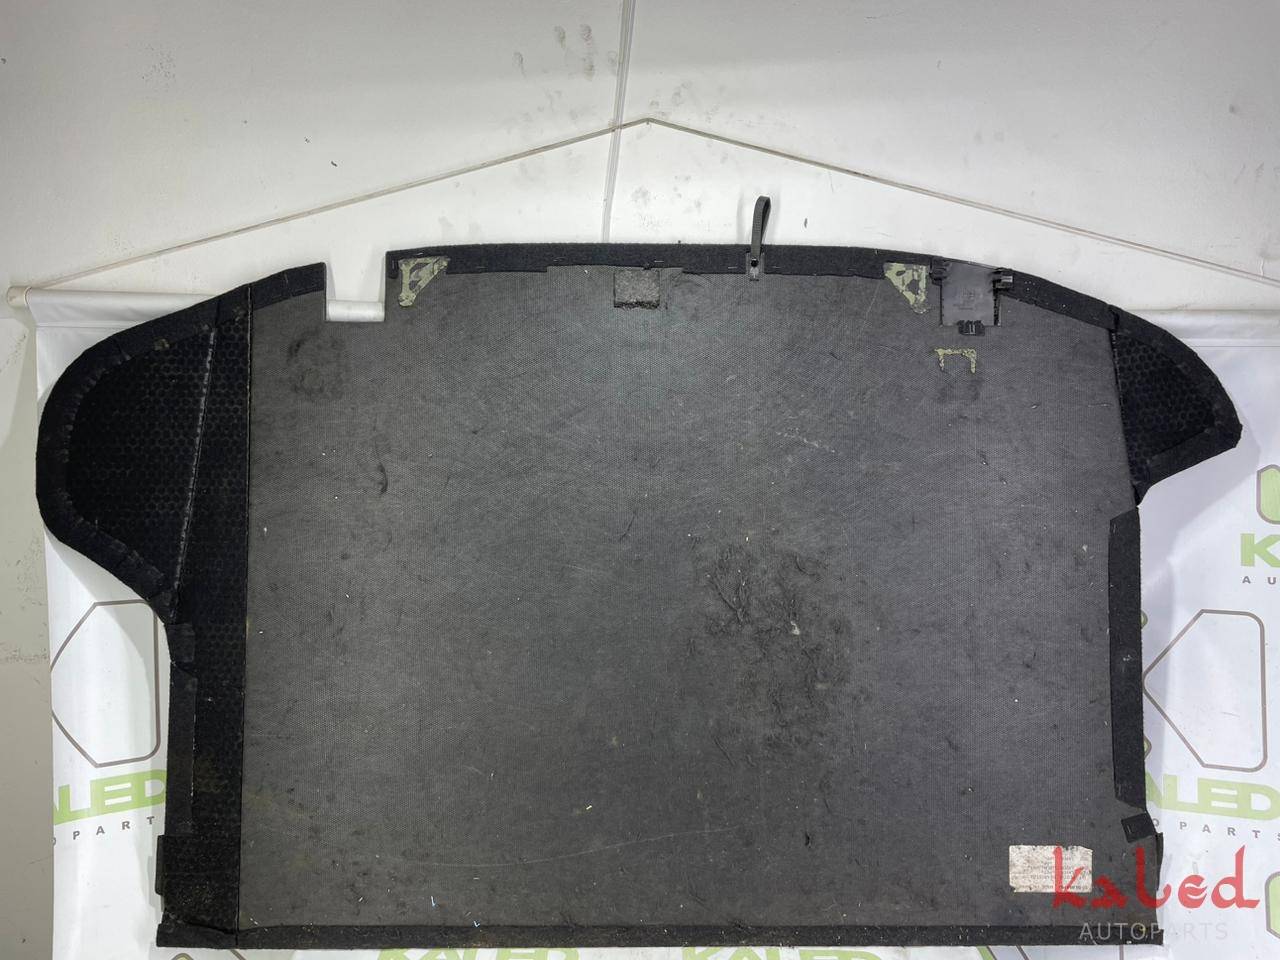 Carpet assoalho porta malas Subaru Impreza Hatch 08 a 11    